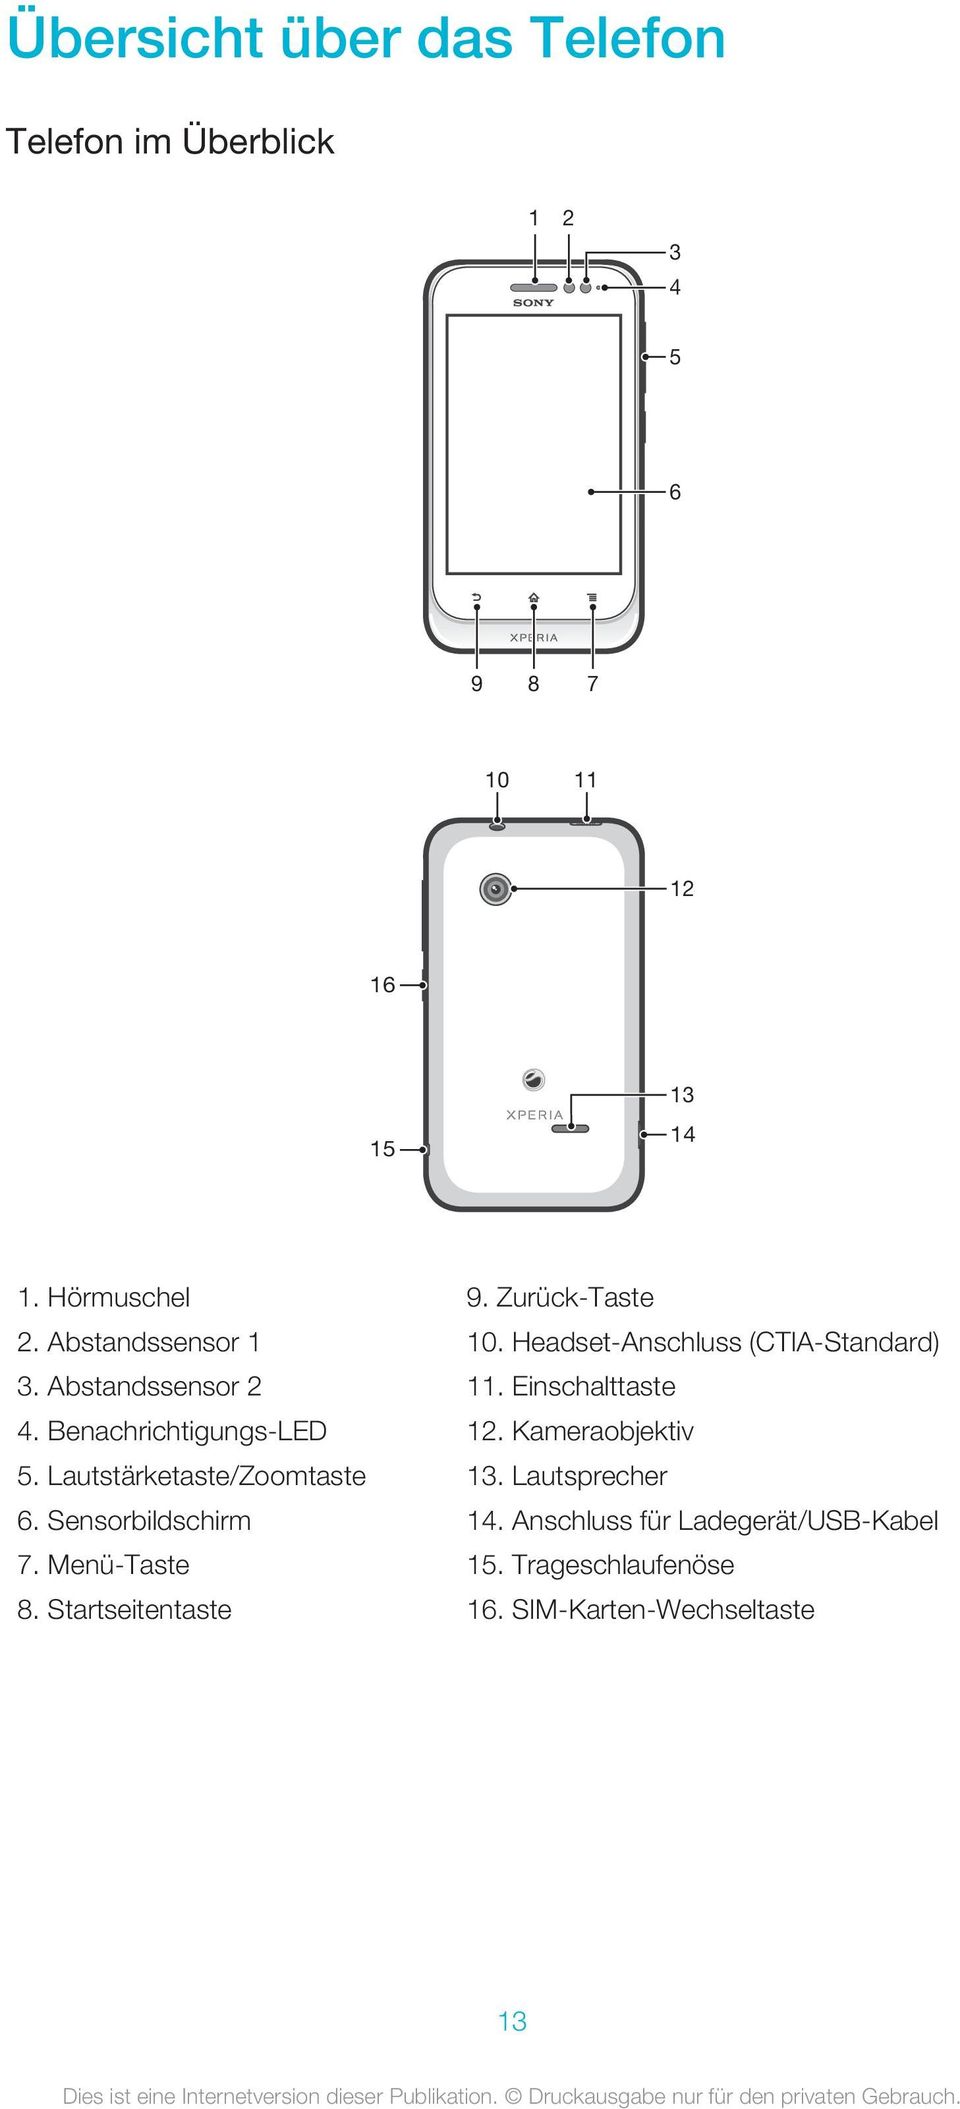 Sensorbildschirm 7. Menü-Taste 8. Startseitentaste 9. Zurück-Taste 10. Headset-Anschluss (CTIA-Standard) 11.